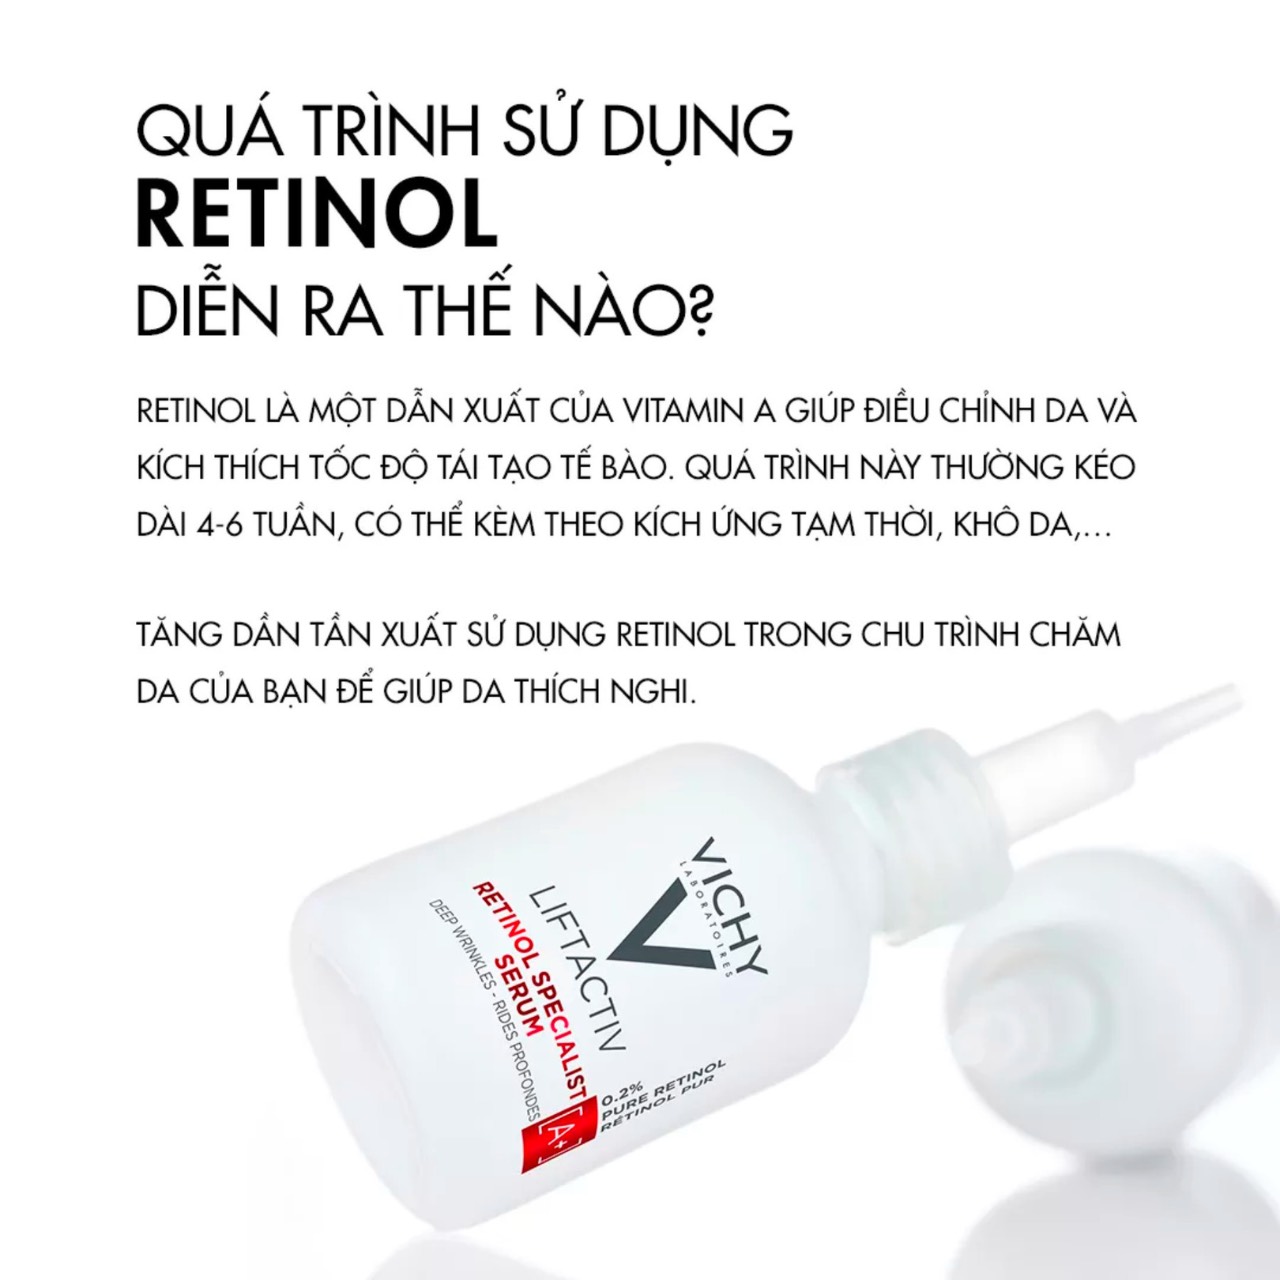 Dưỡng Chất Chứa Retinol Giúp Cấp Ẩm & Chống Lão Hoá Liftactiv Retinol Specialist Deep Wrinkles Serum 30ml